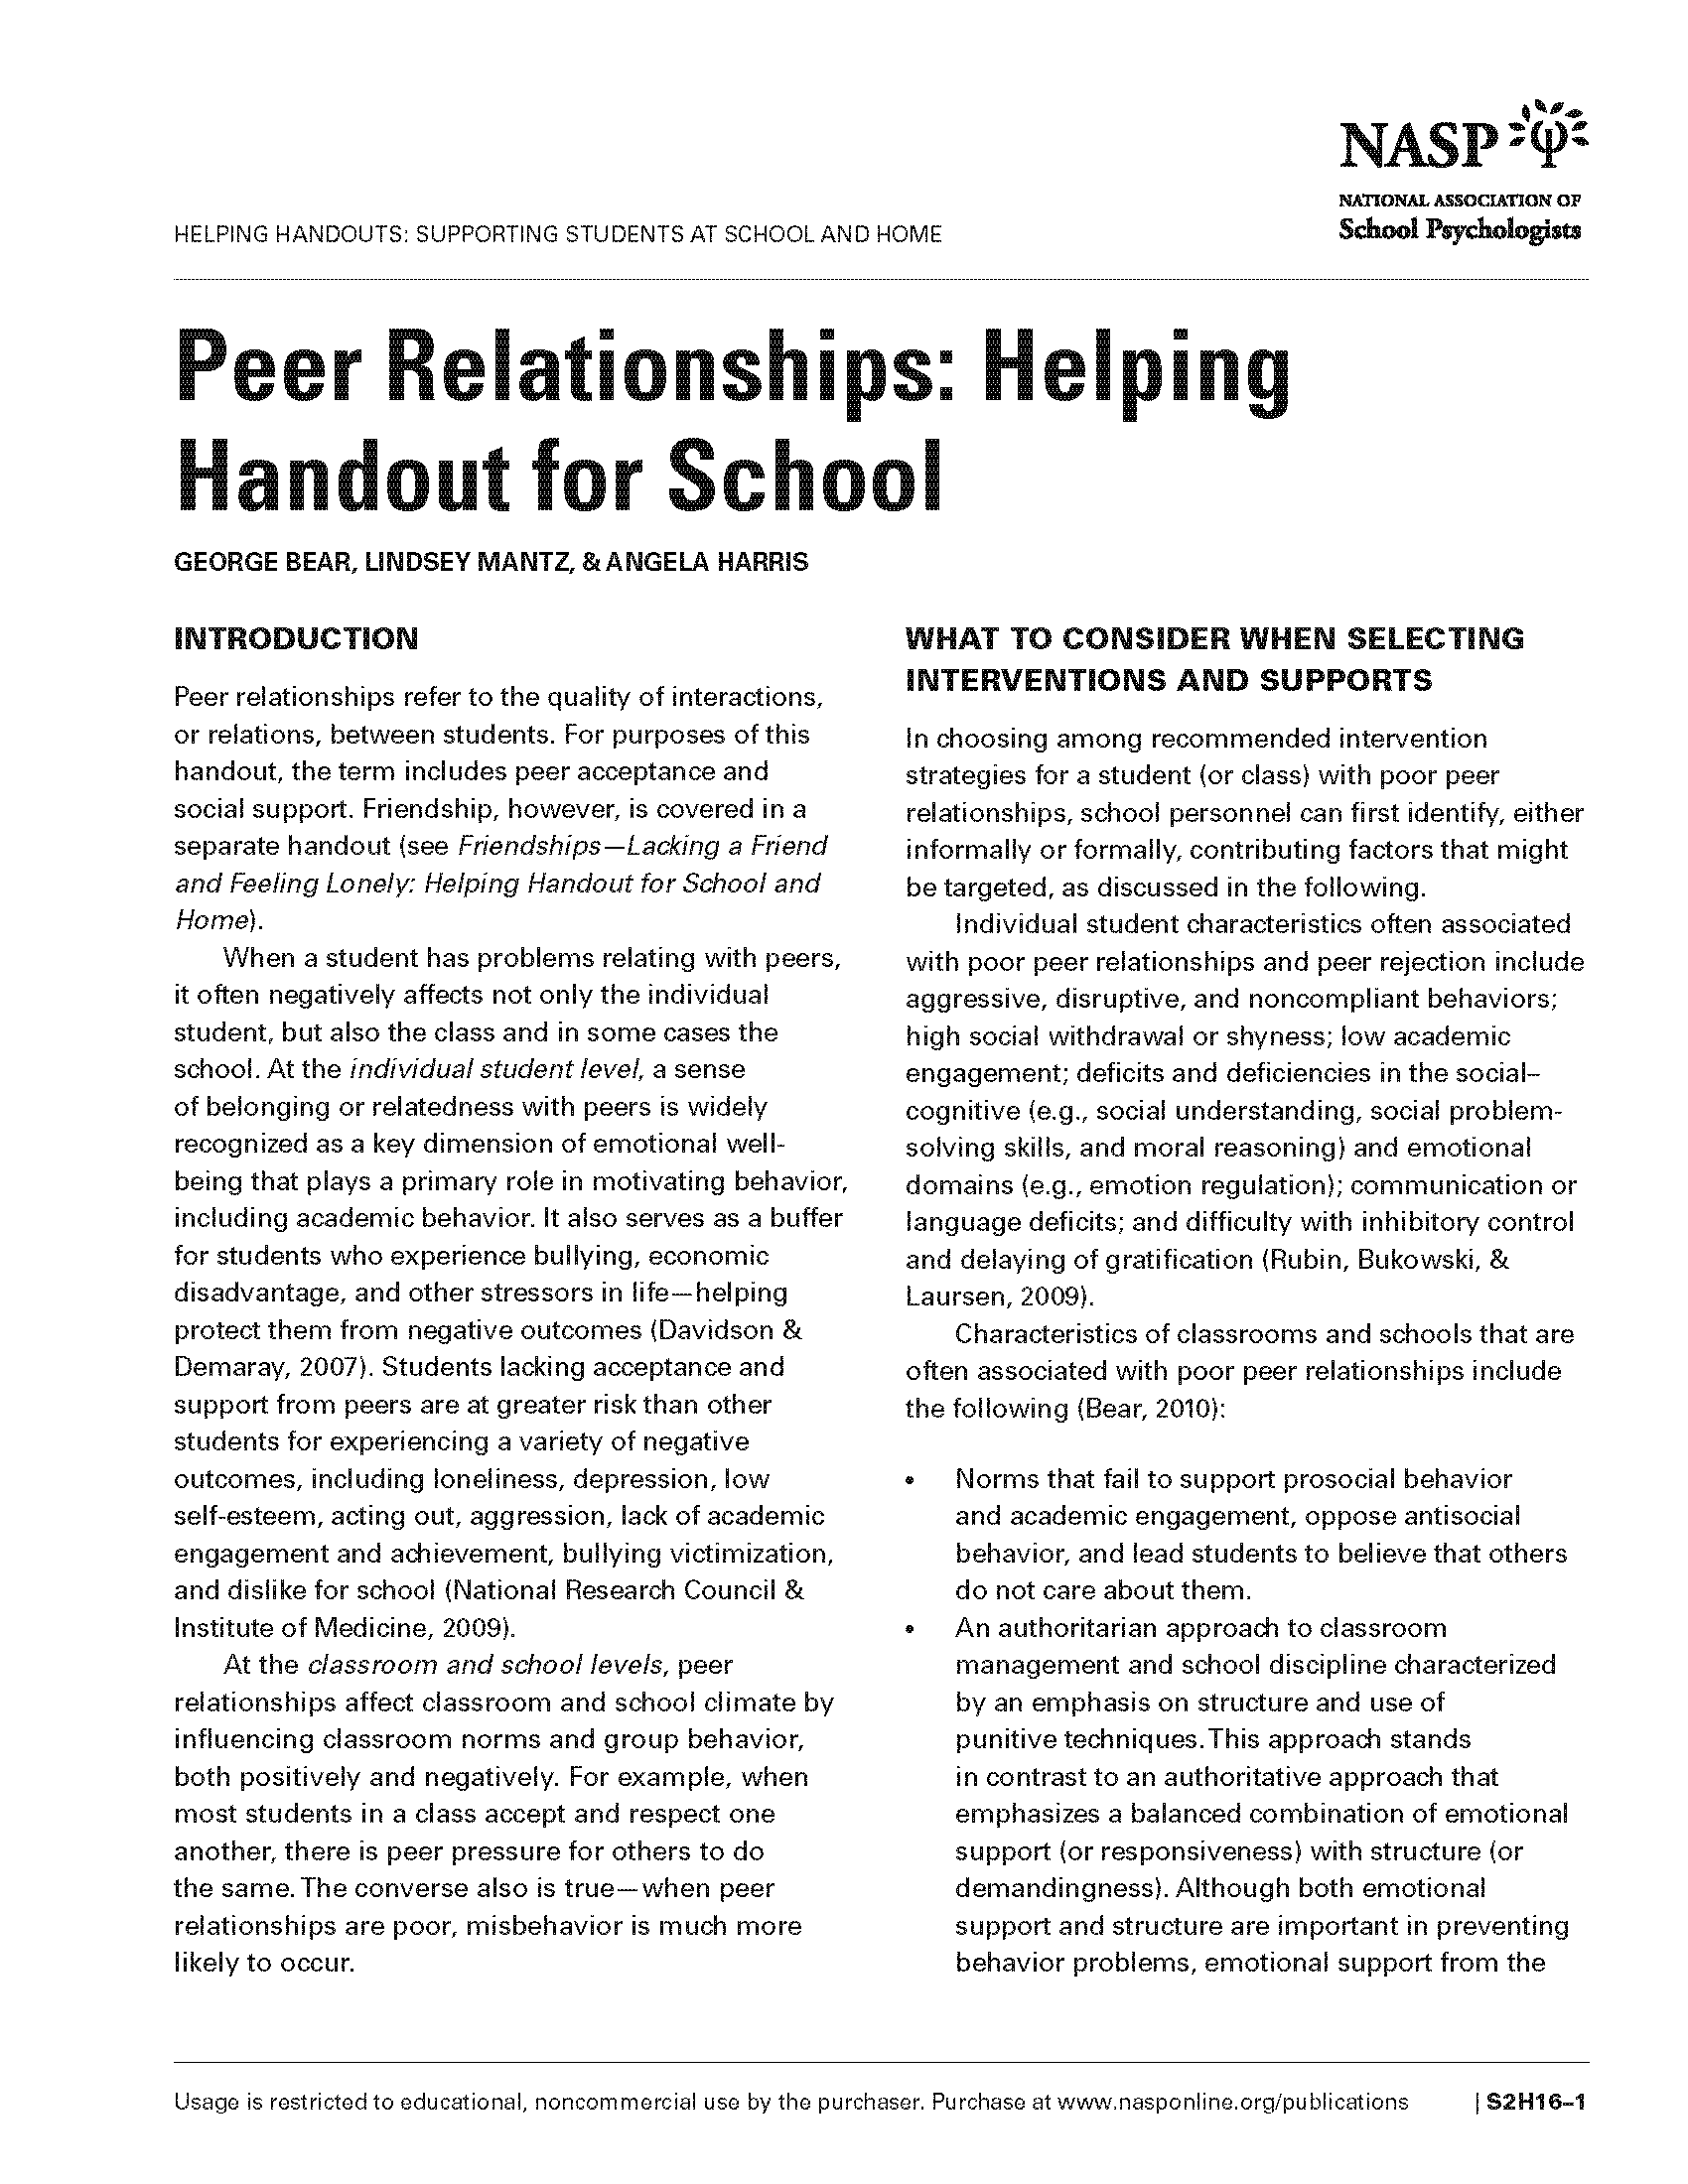 Peer Relationships: Helping Handout for School 